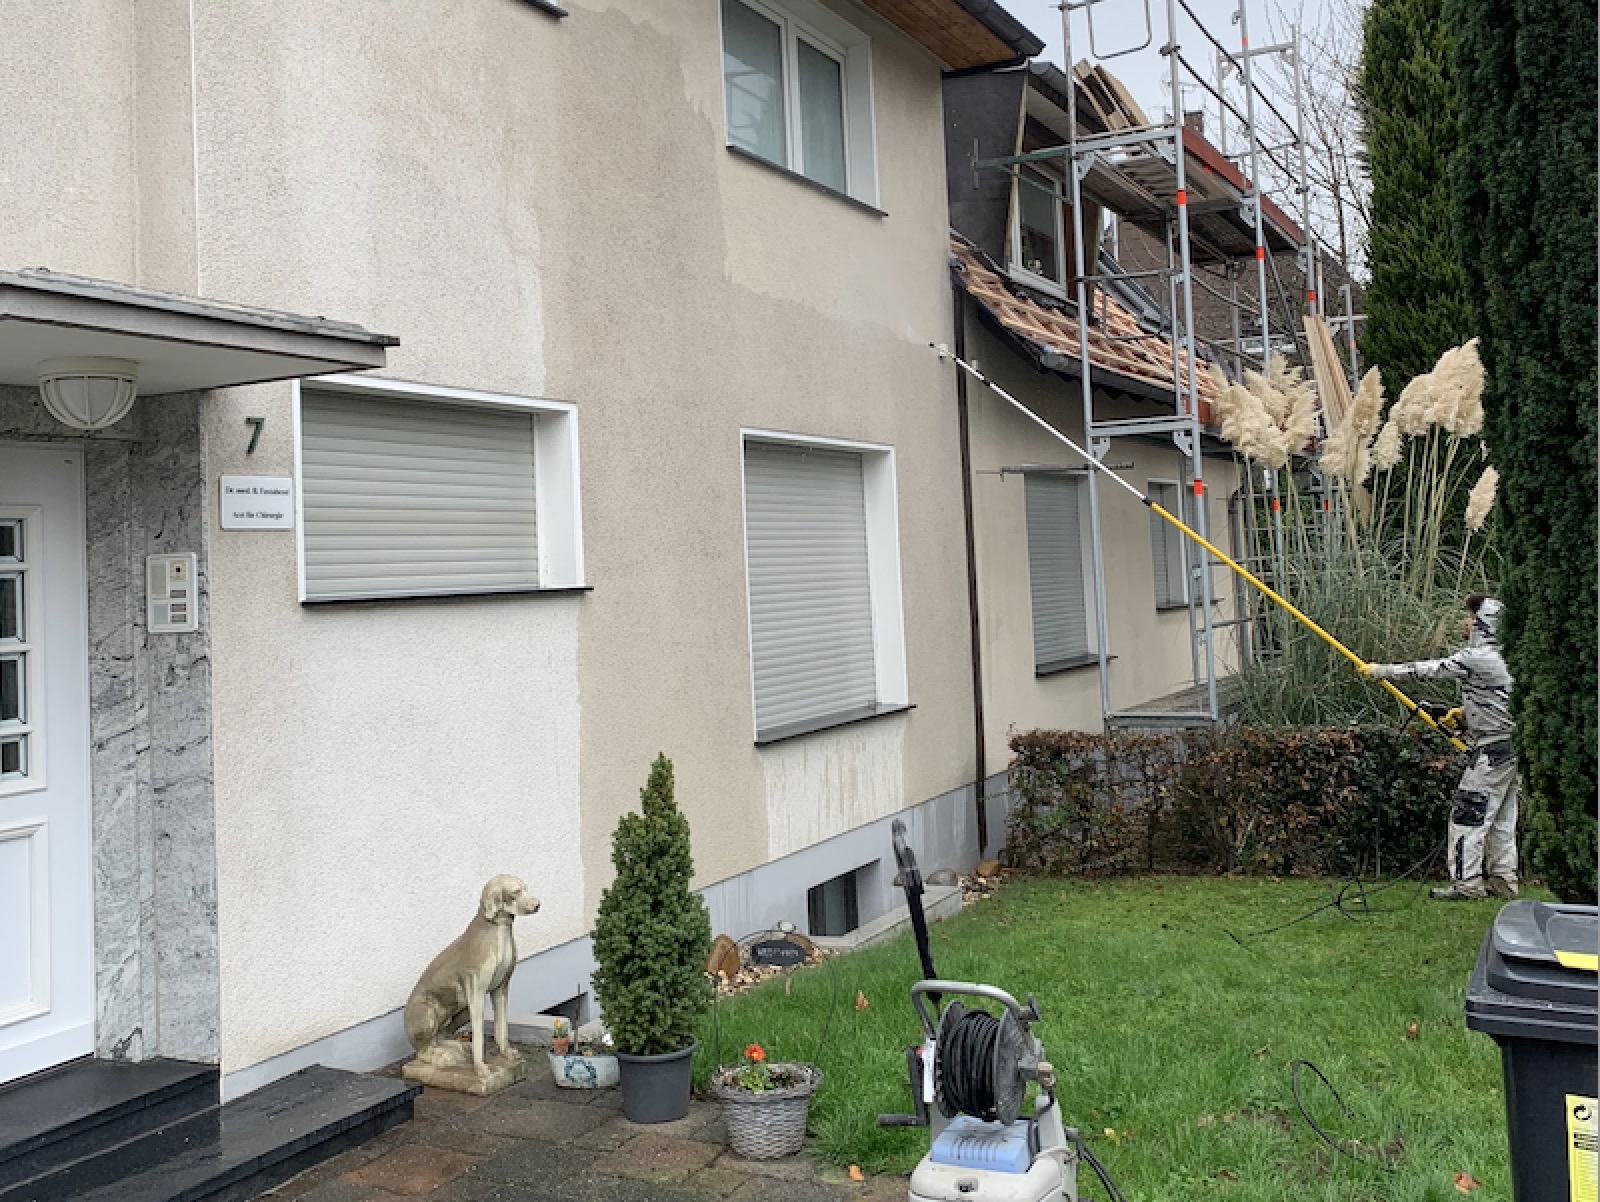 Reparaturarbeiten von Stukkateur Jungkunst - Reinigung Hausfassade für weitere Stuckateur-Arbeiten